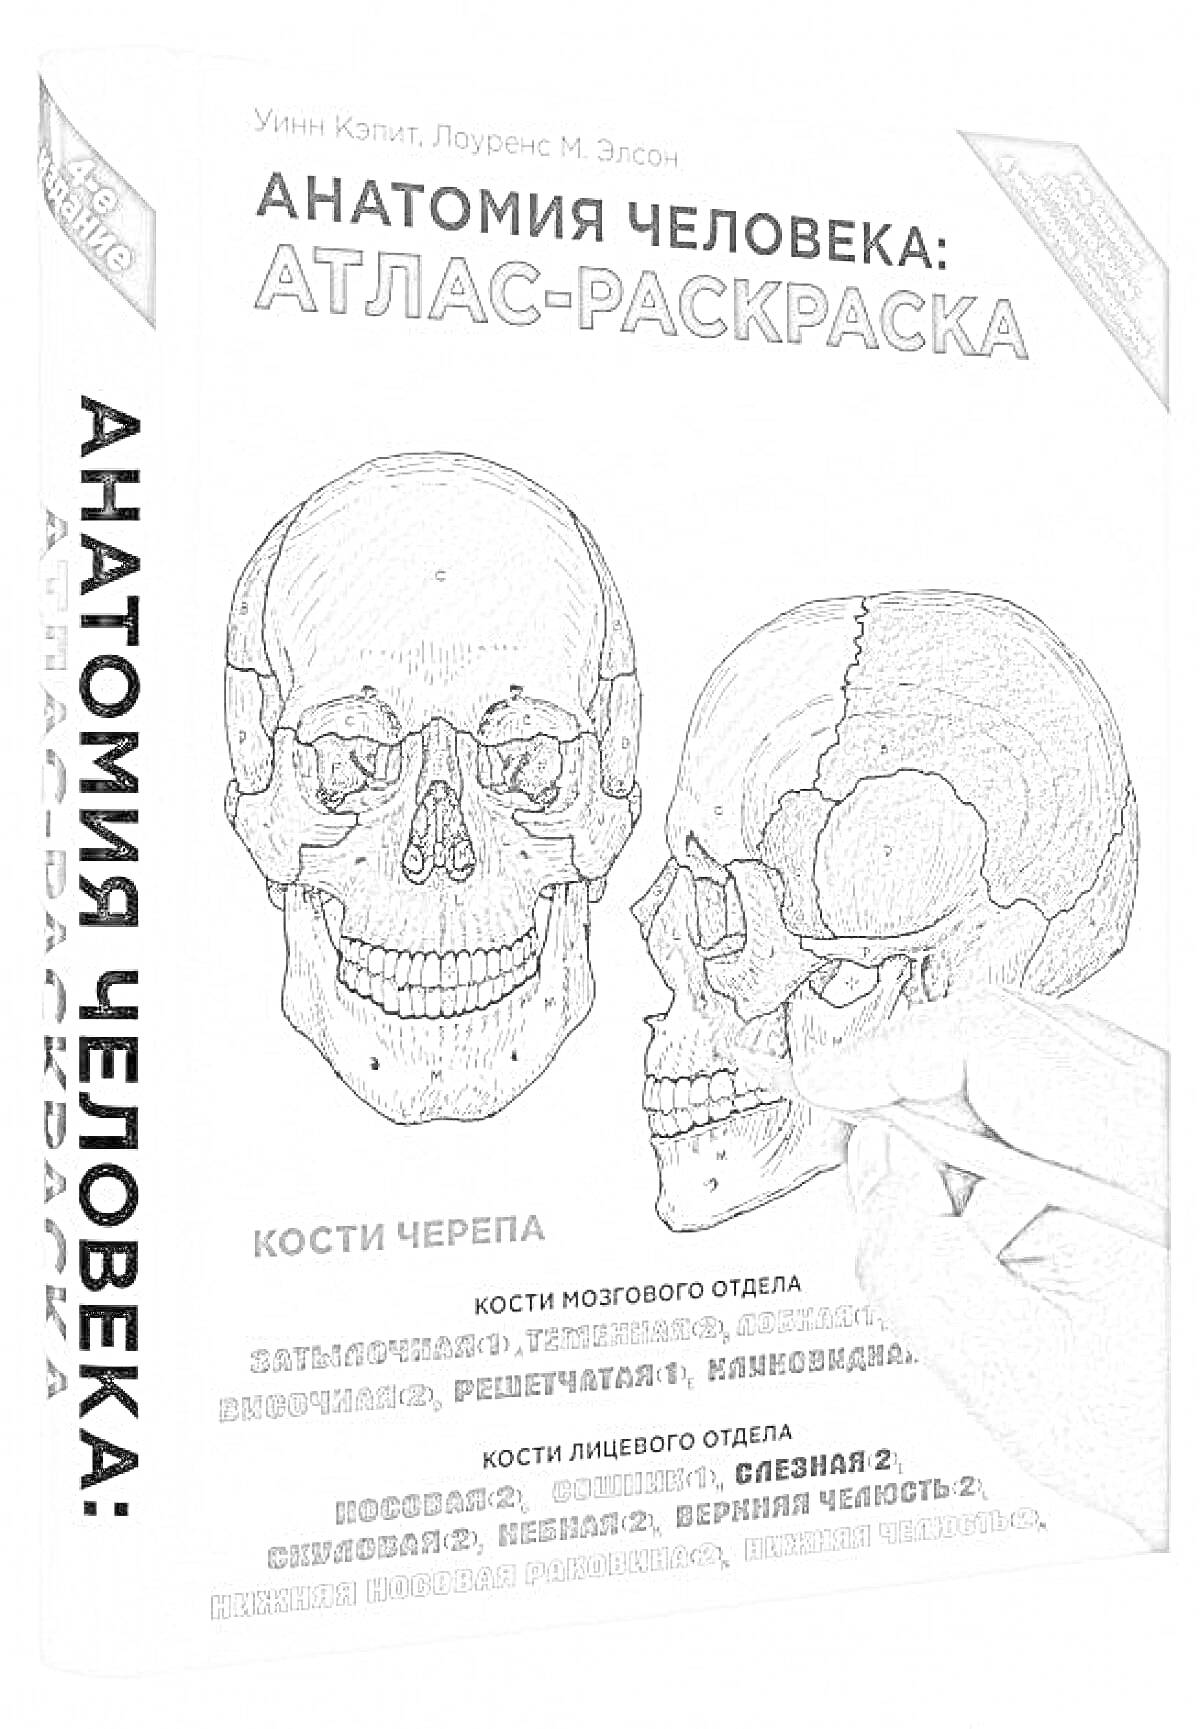 Анатомия человека: Атлас-раскраска. Кости черепа: Кости мозгового отдела - затылочная, теменная, лобная, решетчатая, клиновидная; Кости лицевого отдела - носовая, слезная, верхняя челюсть 2, скуловая, небная, нижняя челюсть